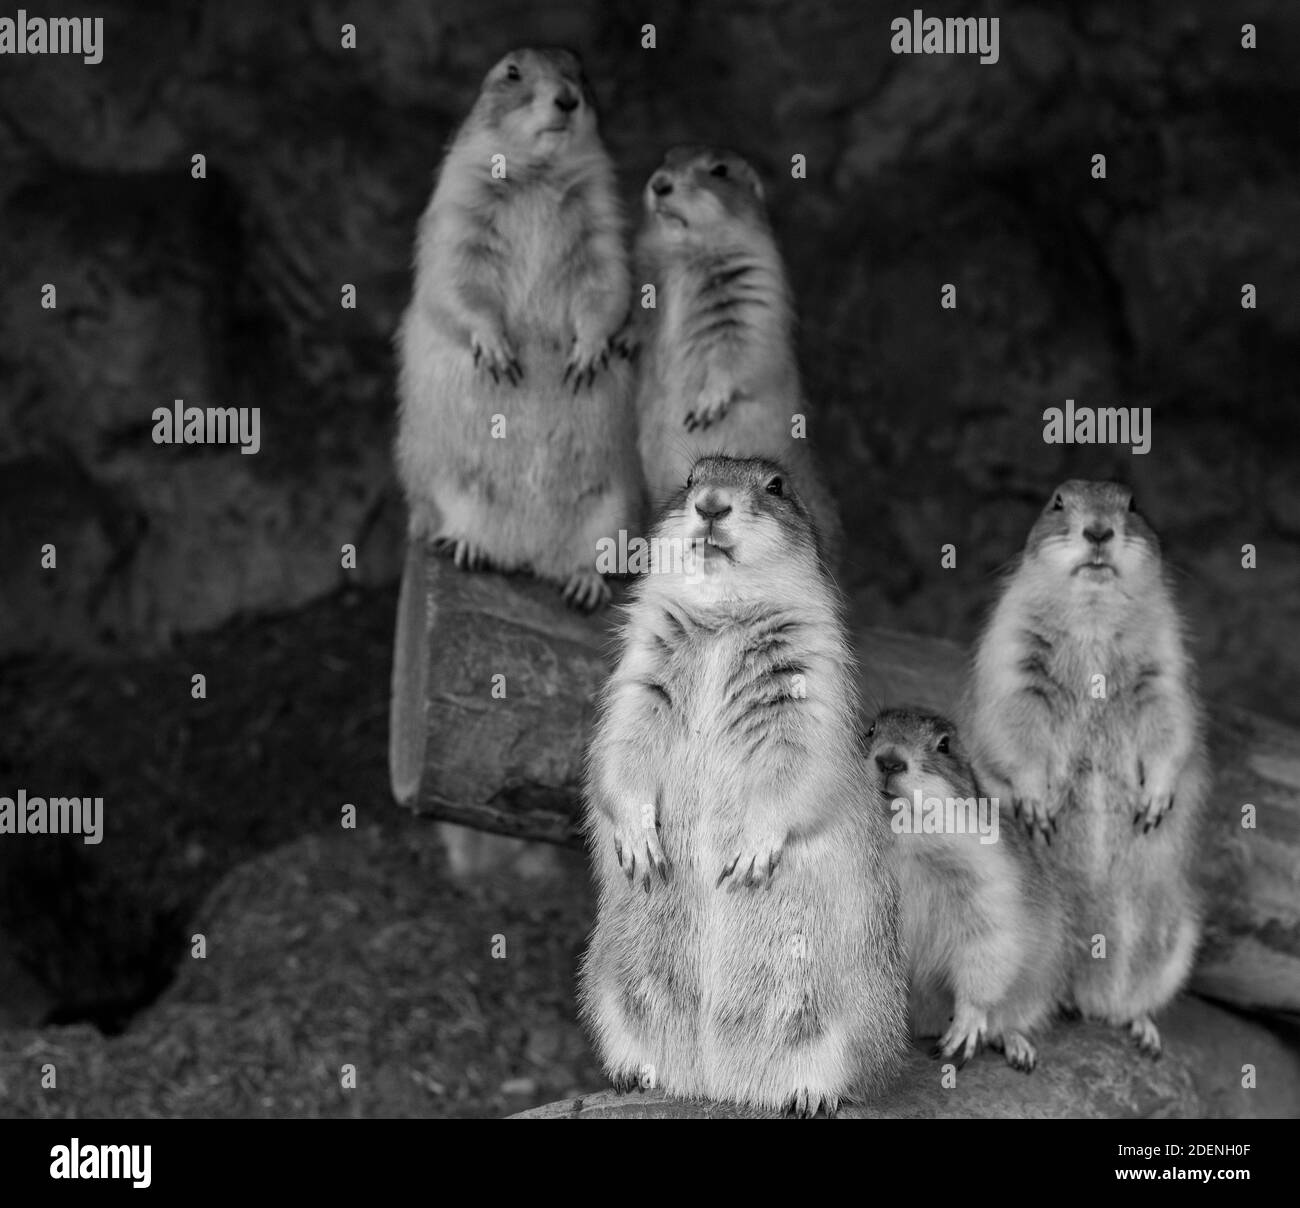 Eine Gruppe von fünf niedlichen Präriehunden, die aufrecht stehen und sehr neugierig aussehen. Stockfoto